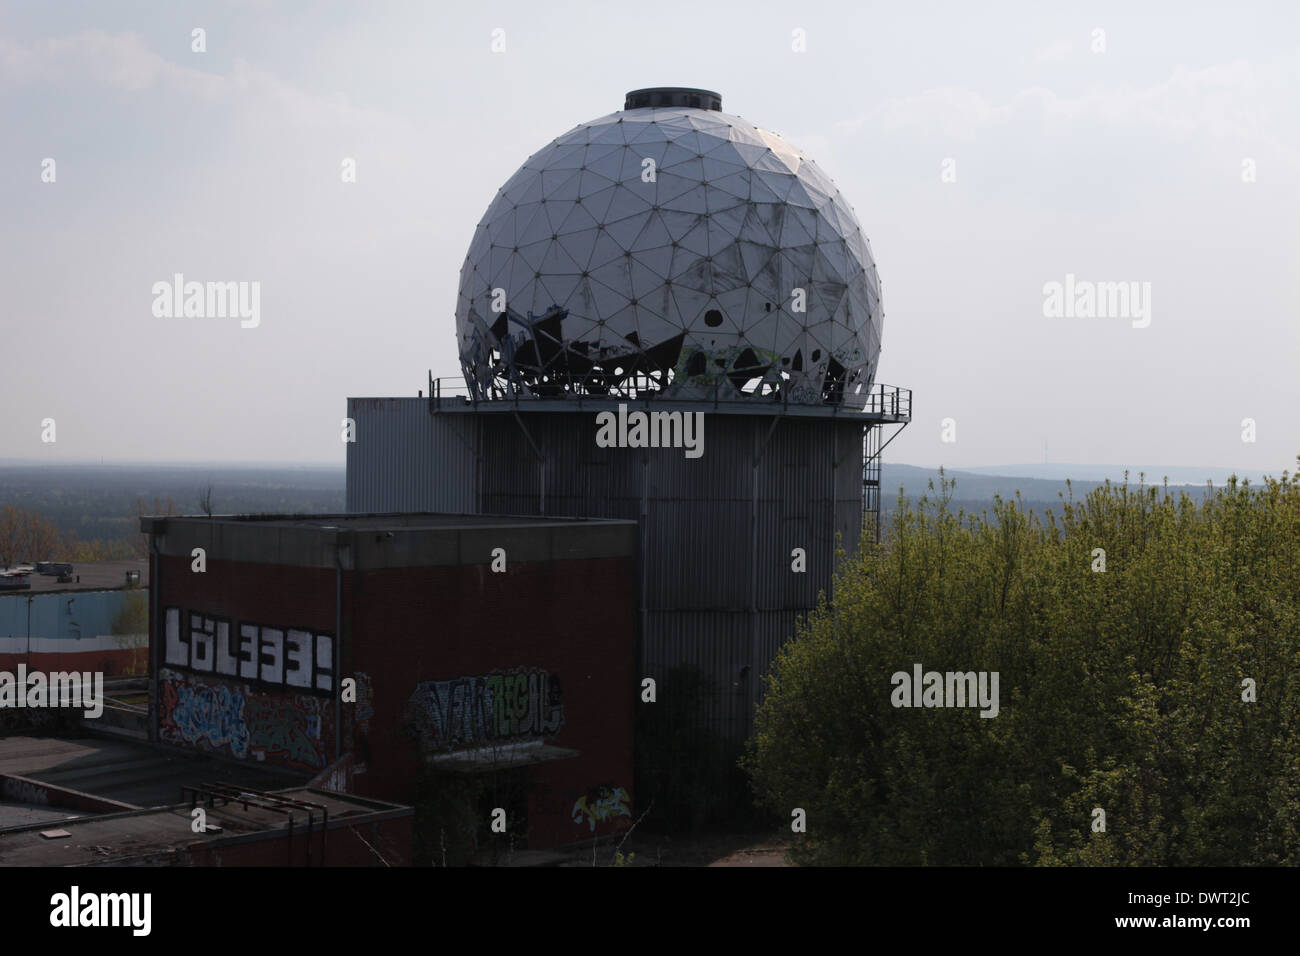 Le radôme de la guerre froide NSA (National Security Agency) poste d'écoute espion au sommet de la colline, Berlin Teufelsberg Banque D'Images